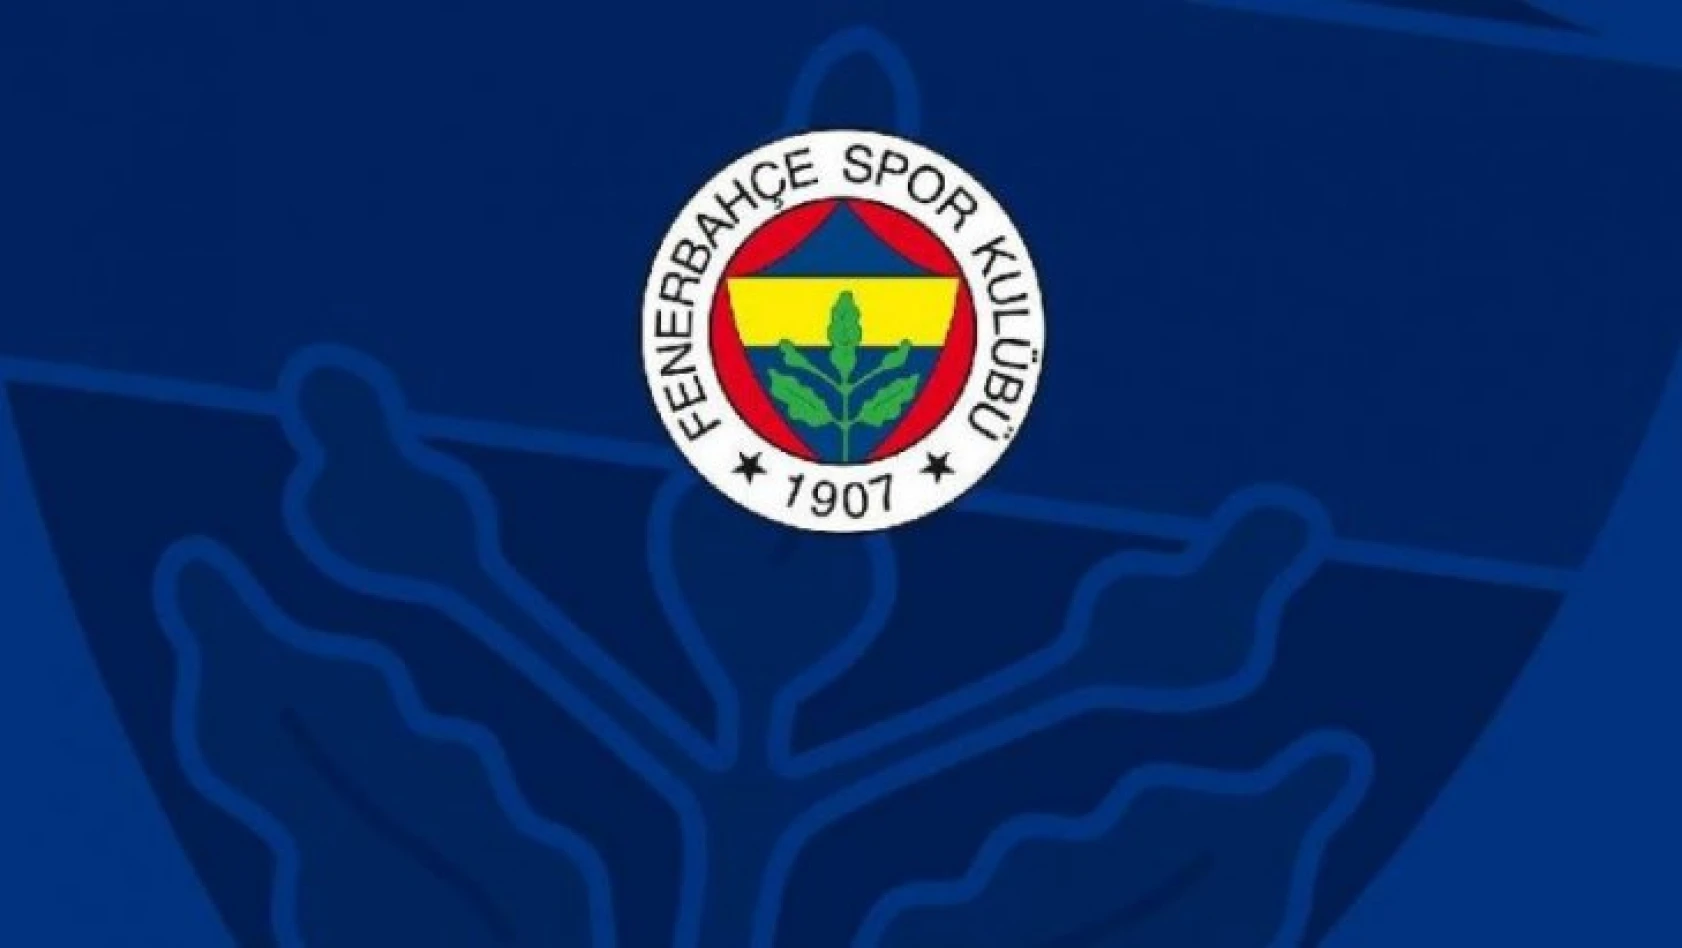 Fenerbahçe, YouTube'da 1 milyon aboneye ulaştı